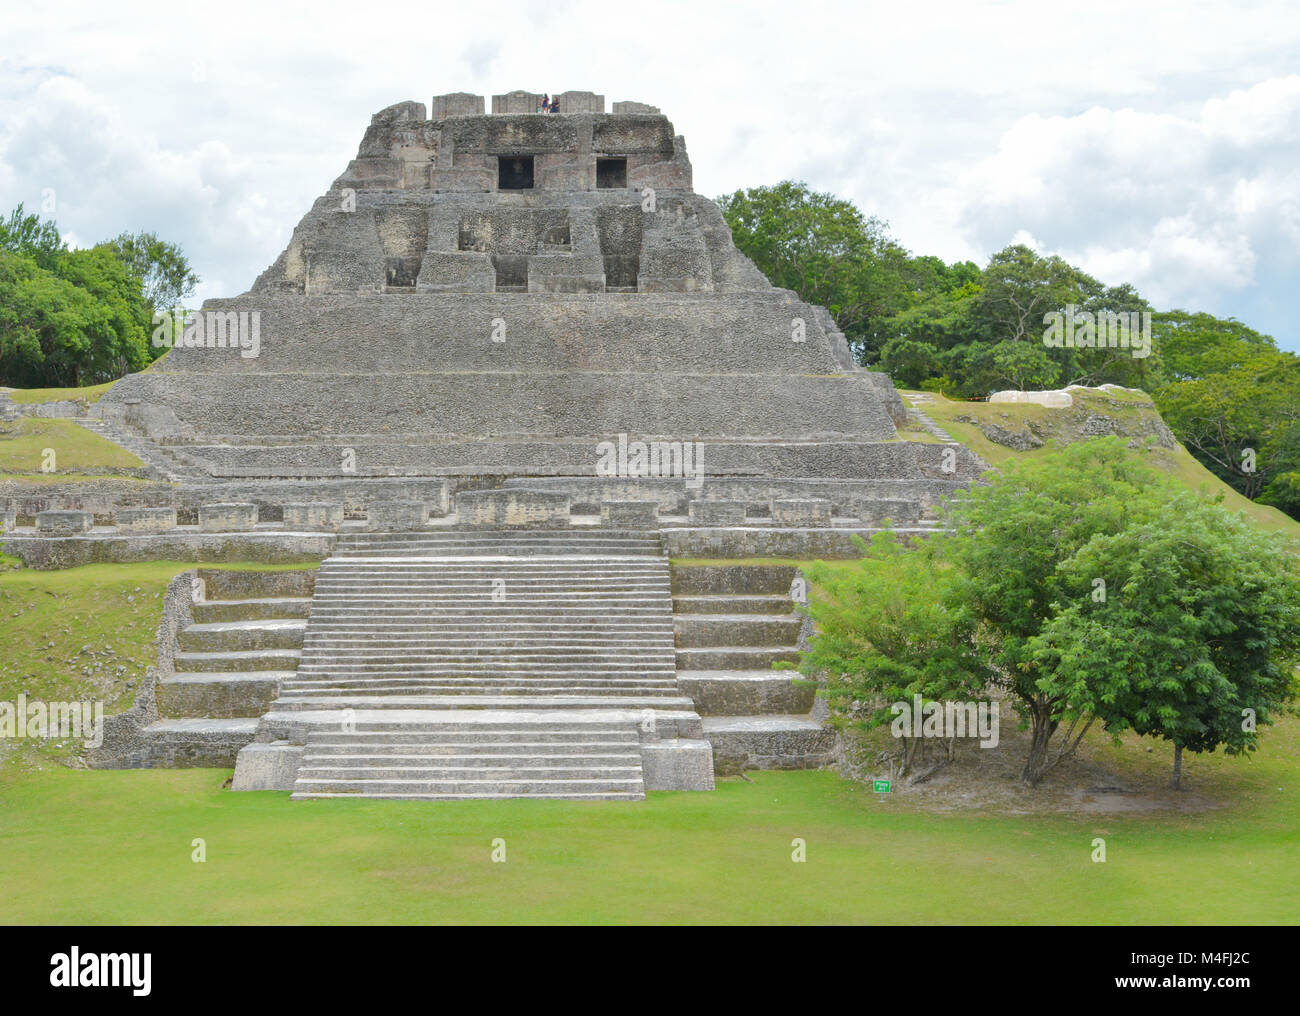 The ancient Mayan ruins Stock Photo